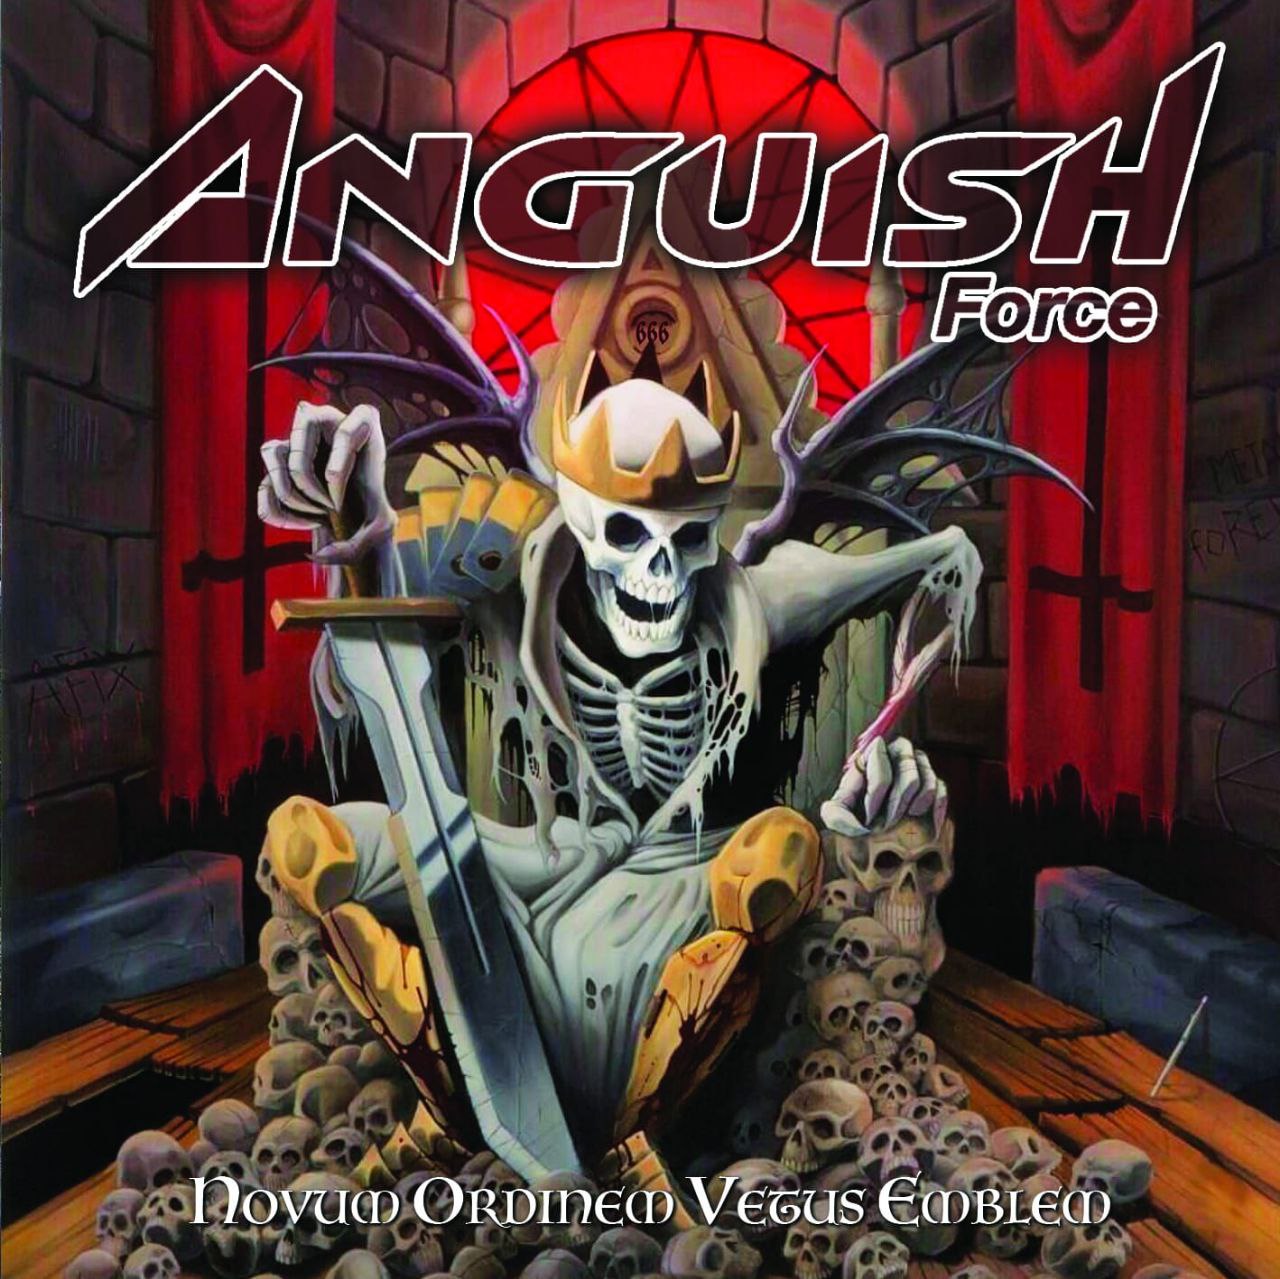 “Novum Ordinem Vetus Emblem”, fuori il nuovo album degli Anguish Force